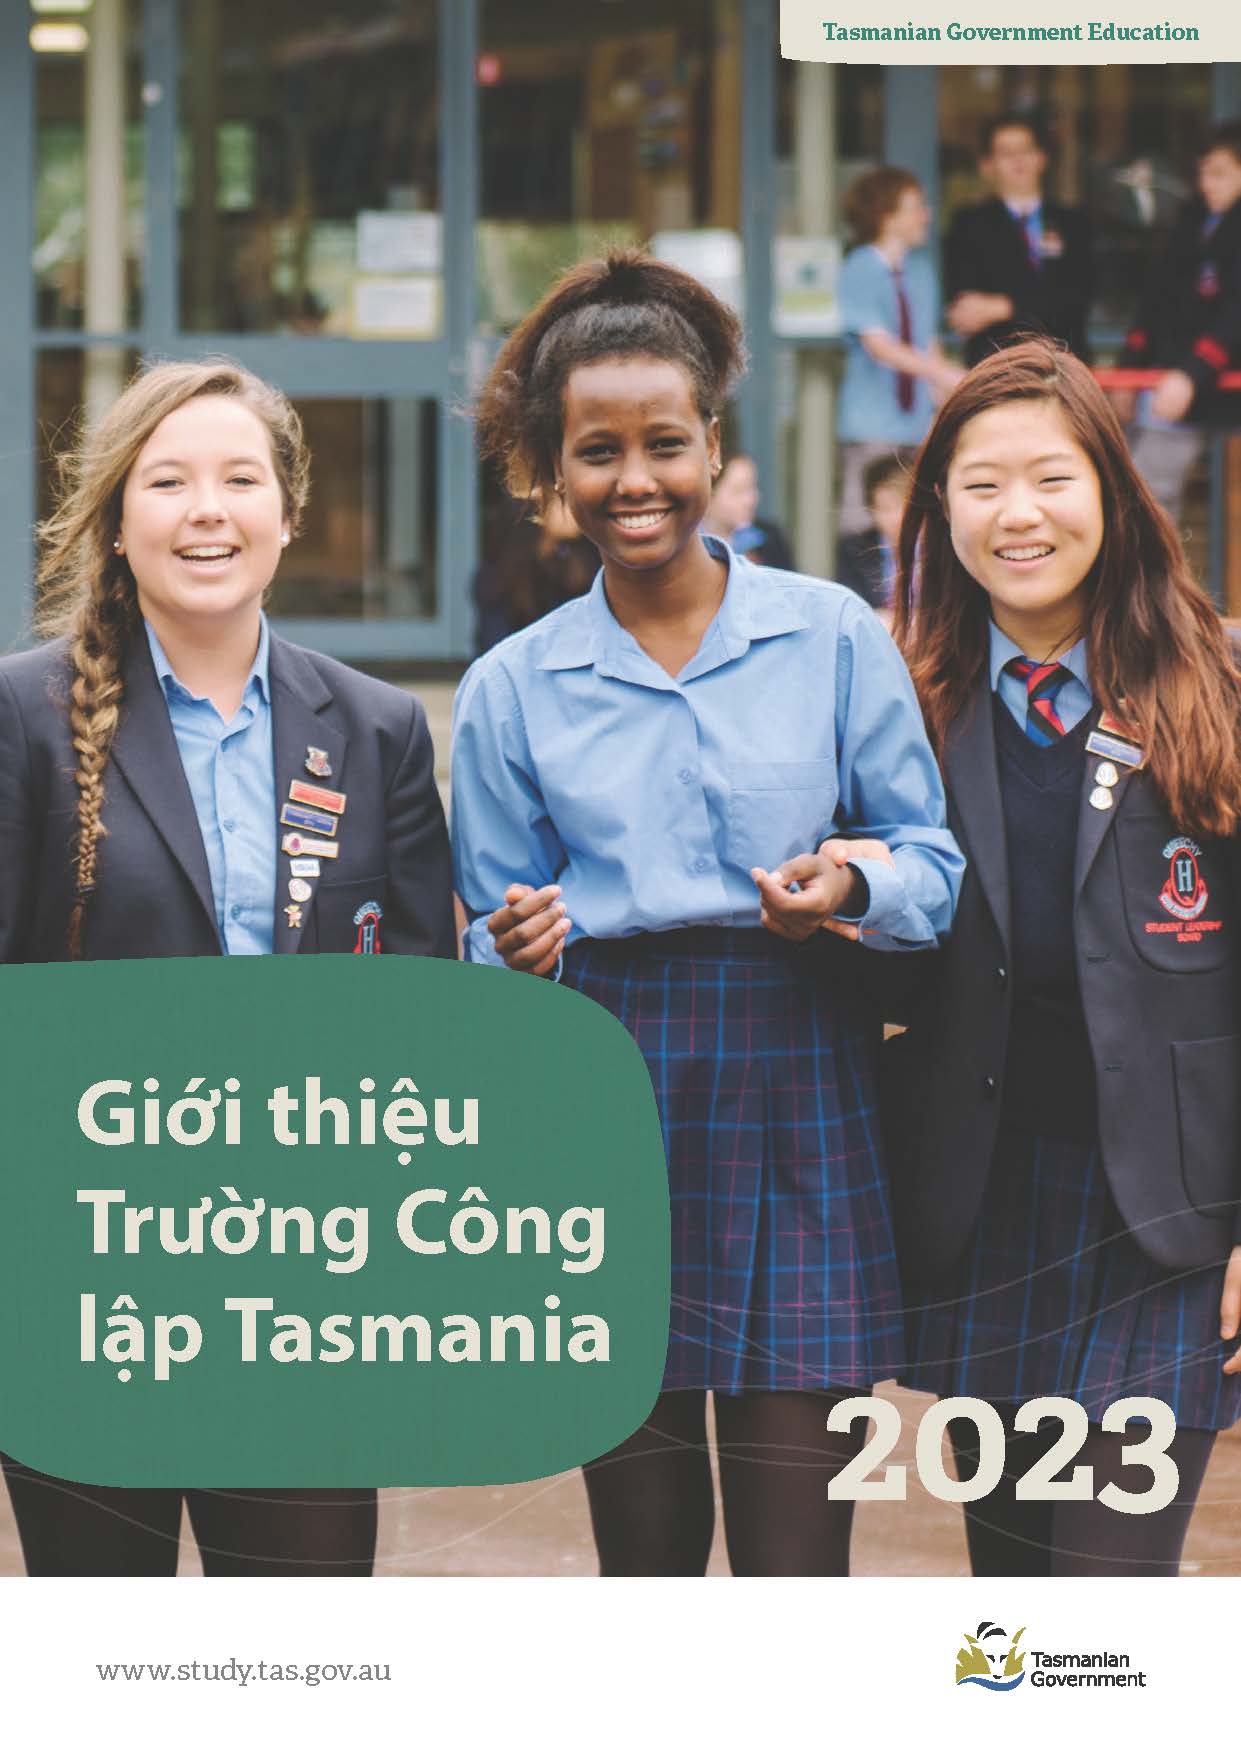 truong THPT cong lap bang Tasmania